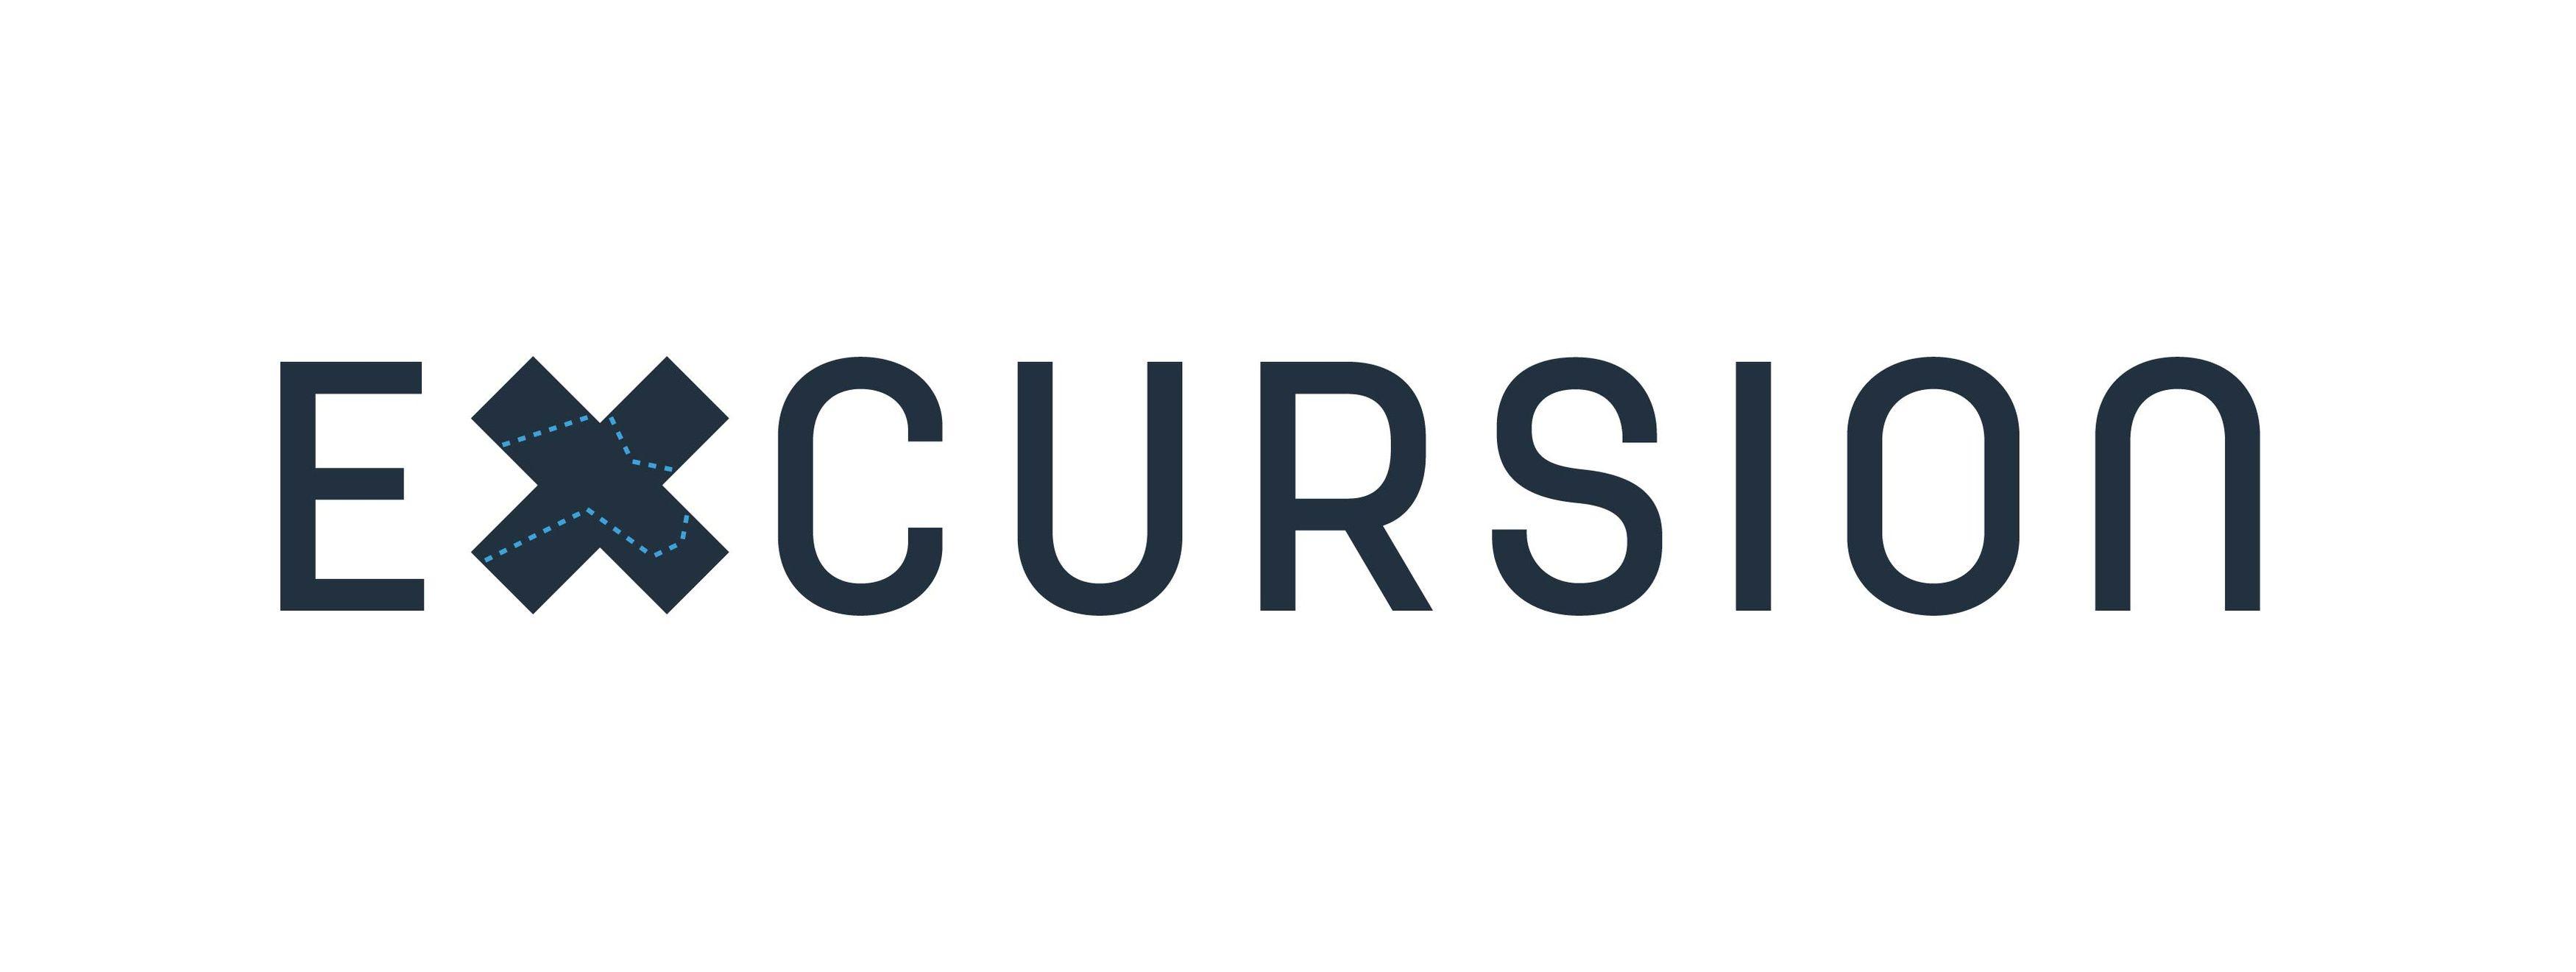 Excursion Logo - excursion logo